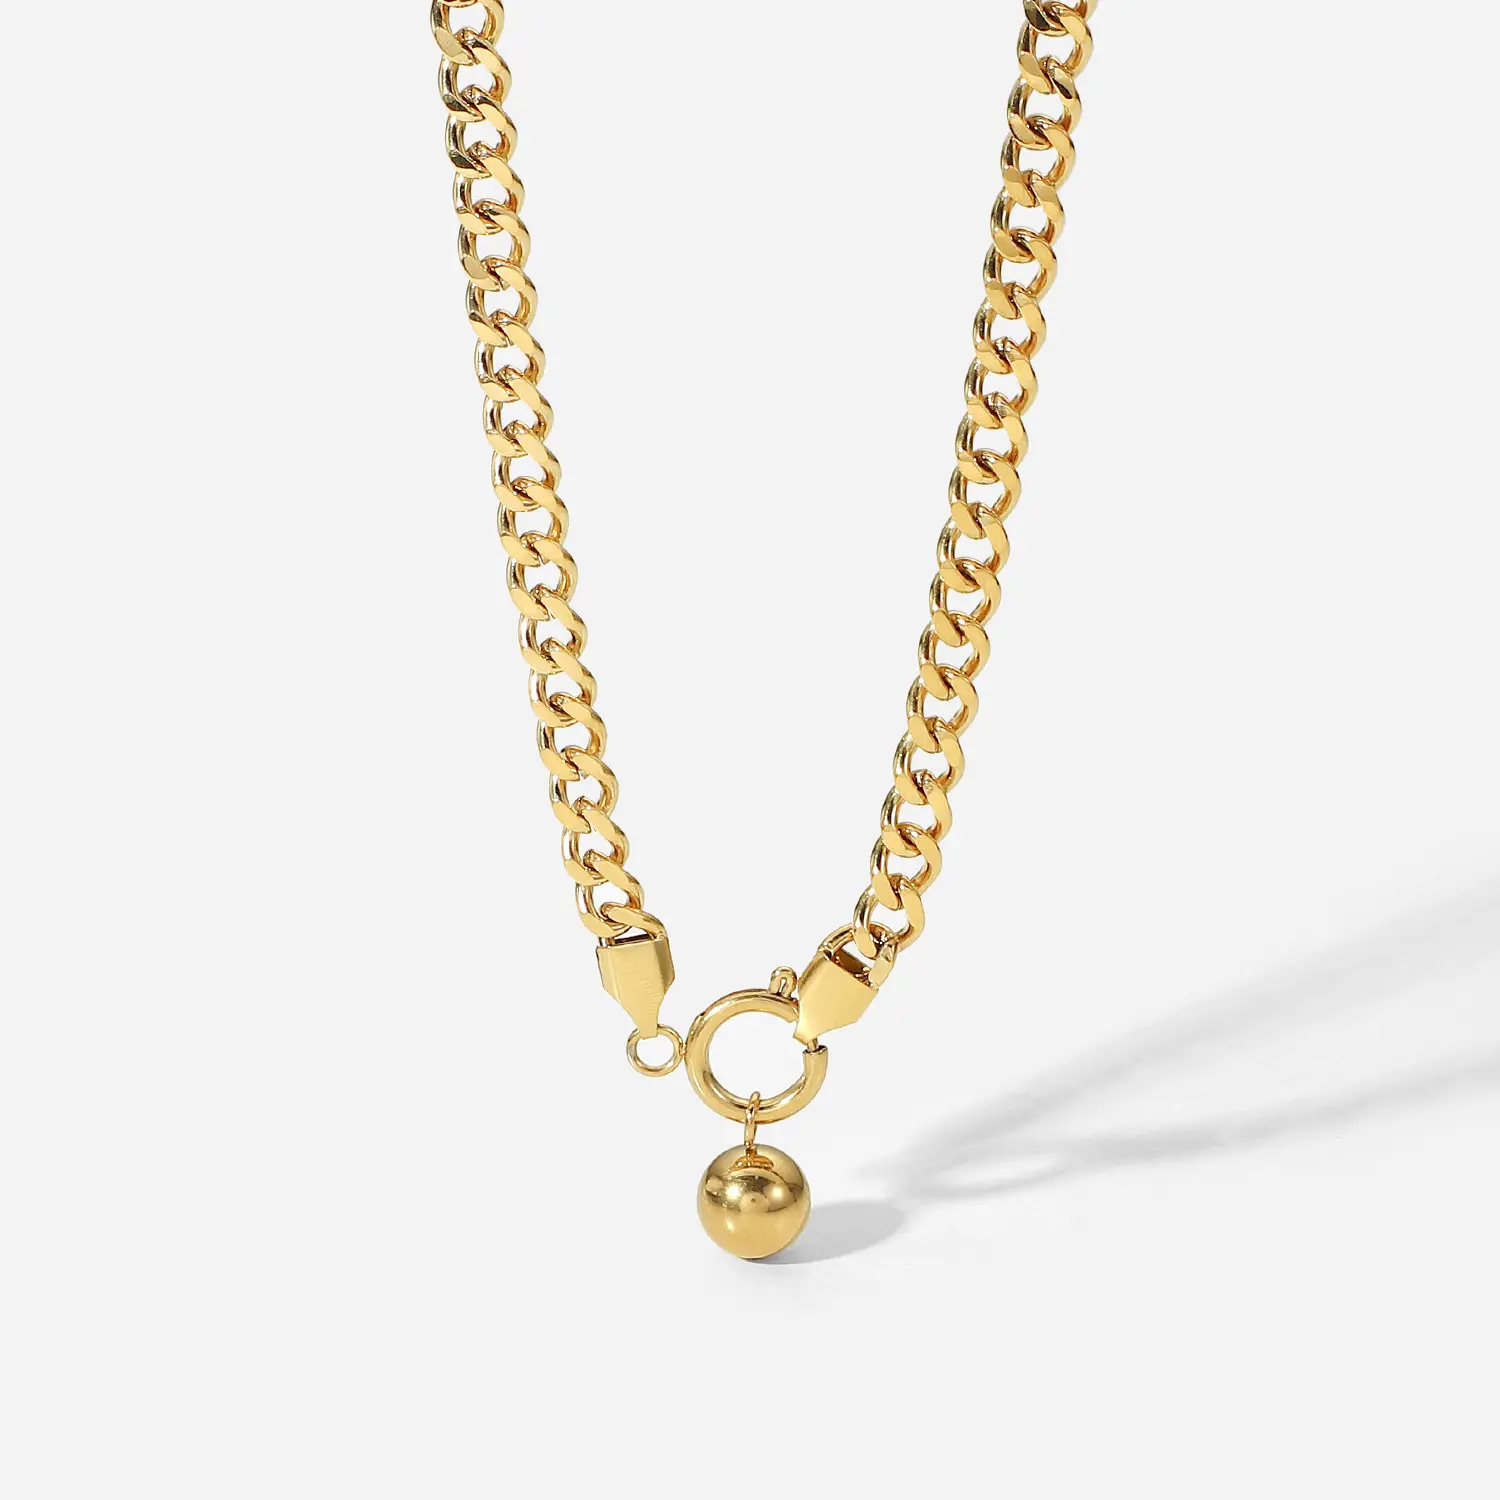 Vintage Halskette 14 Karat Gold kubanische Kette runde Perle Anhänger Feder verschluss Halskette Lady's Neck Kette Edelstahl Halskette